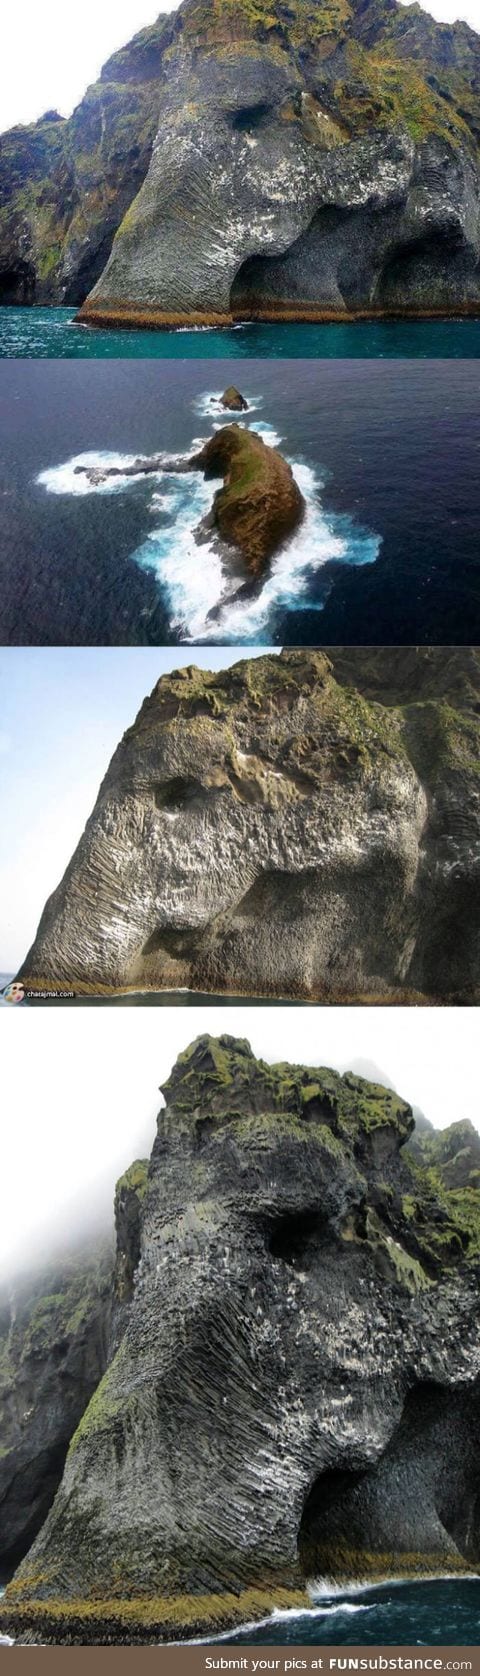 Elephant Rock in Heimaey, Iceland